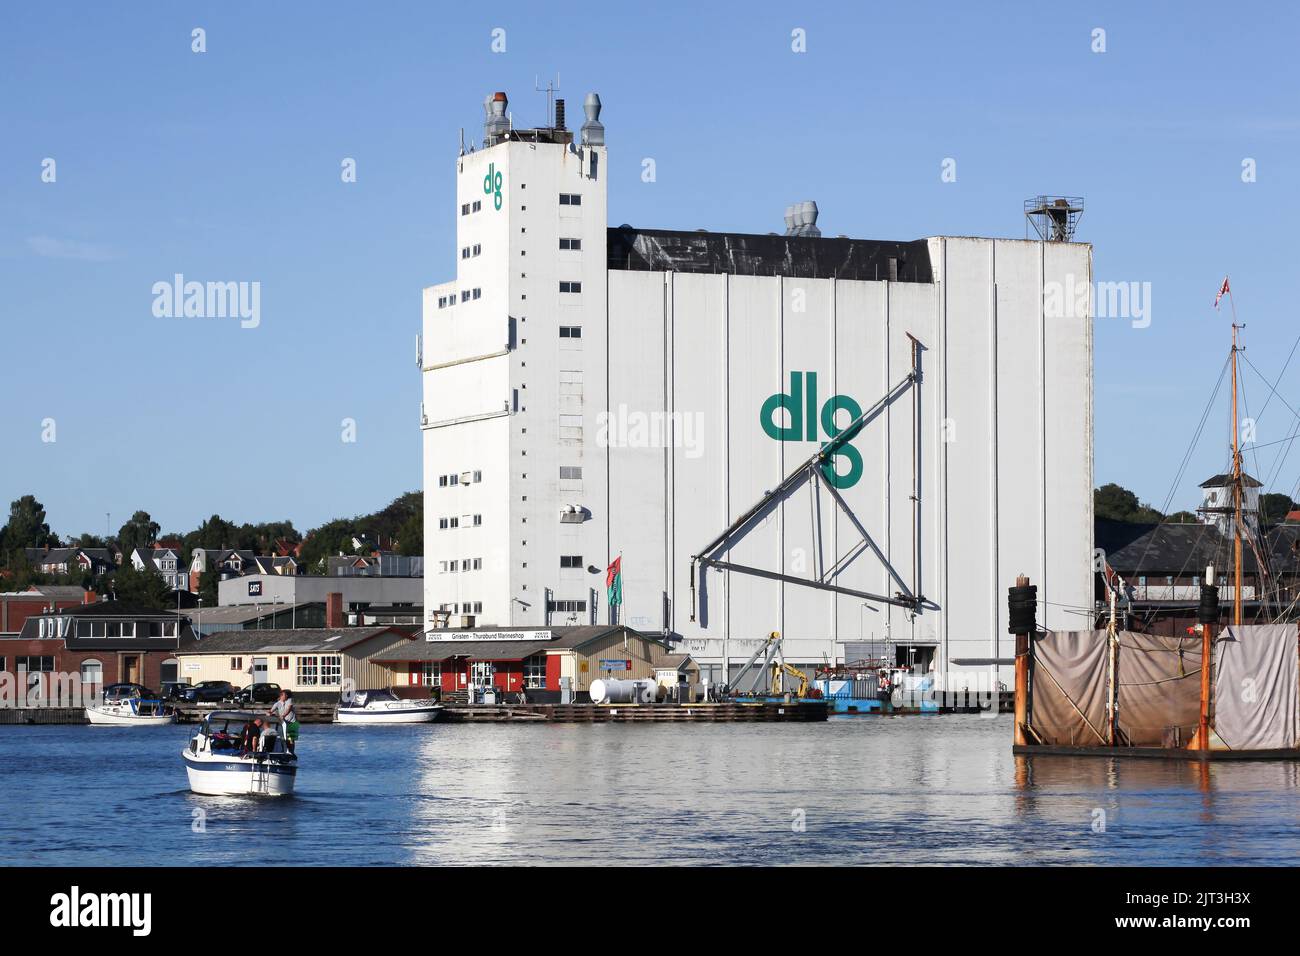 Svendborg, Denmark - July 31, 2020: View of the harbor of Svendborg in Denmark Stock Photo